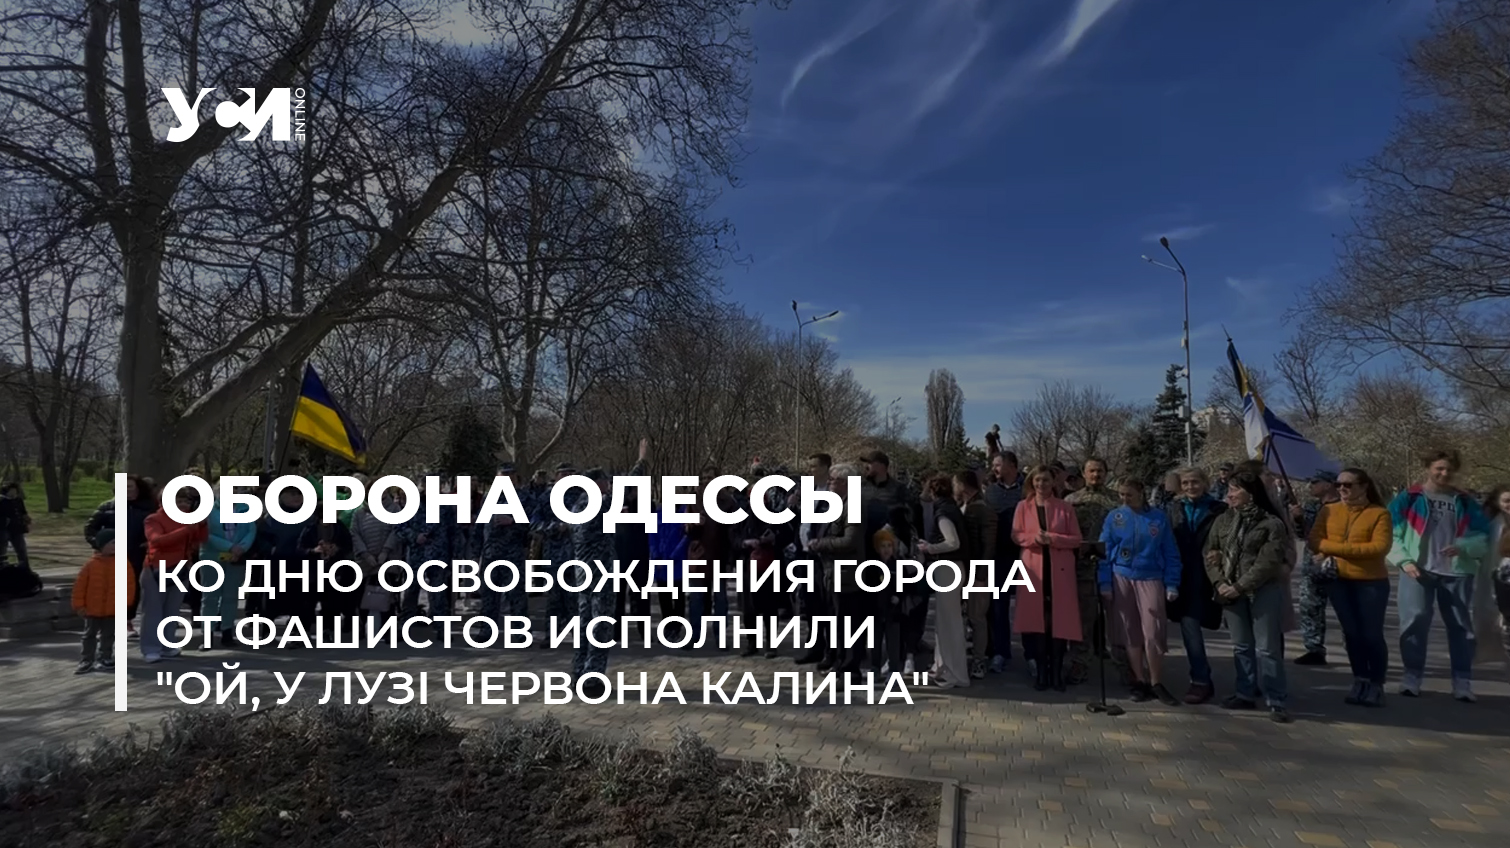 В Одессе к Дню освобождения города от фашистов исполнили “Ой, у лузі червона калина” (видео) «фото»